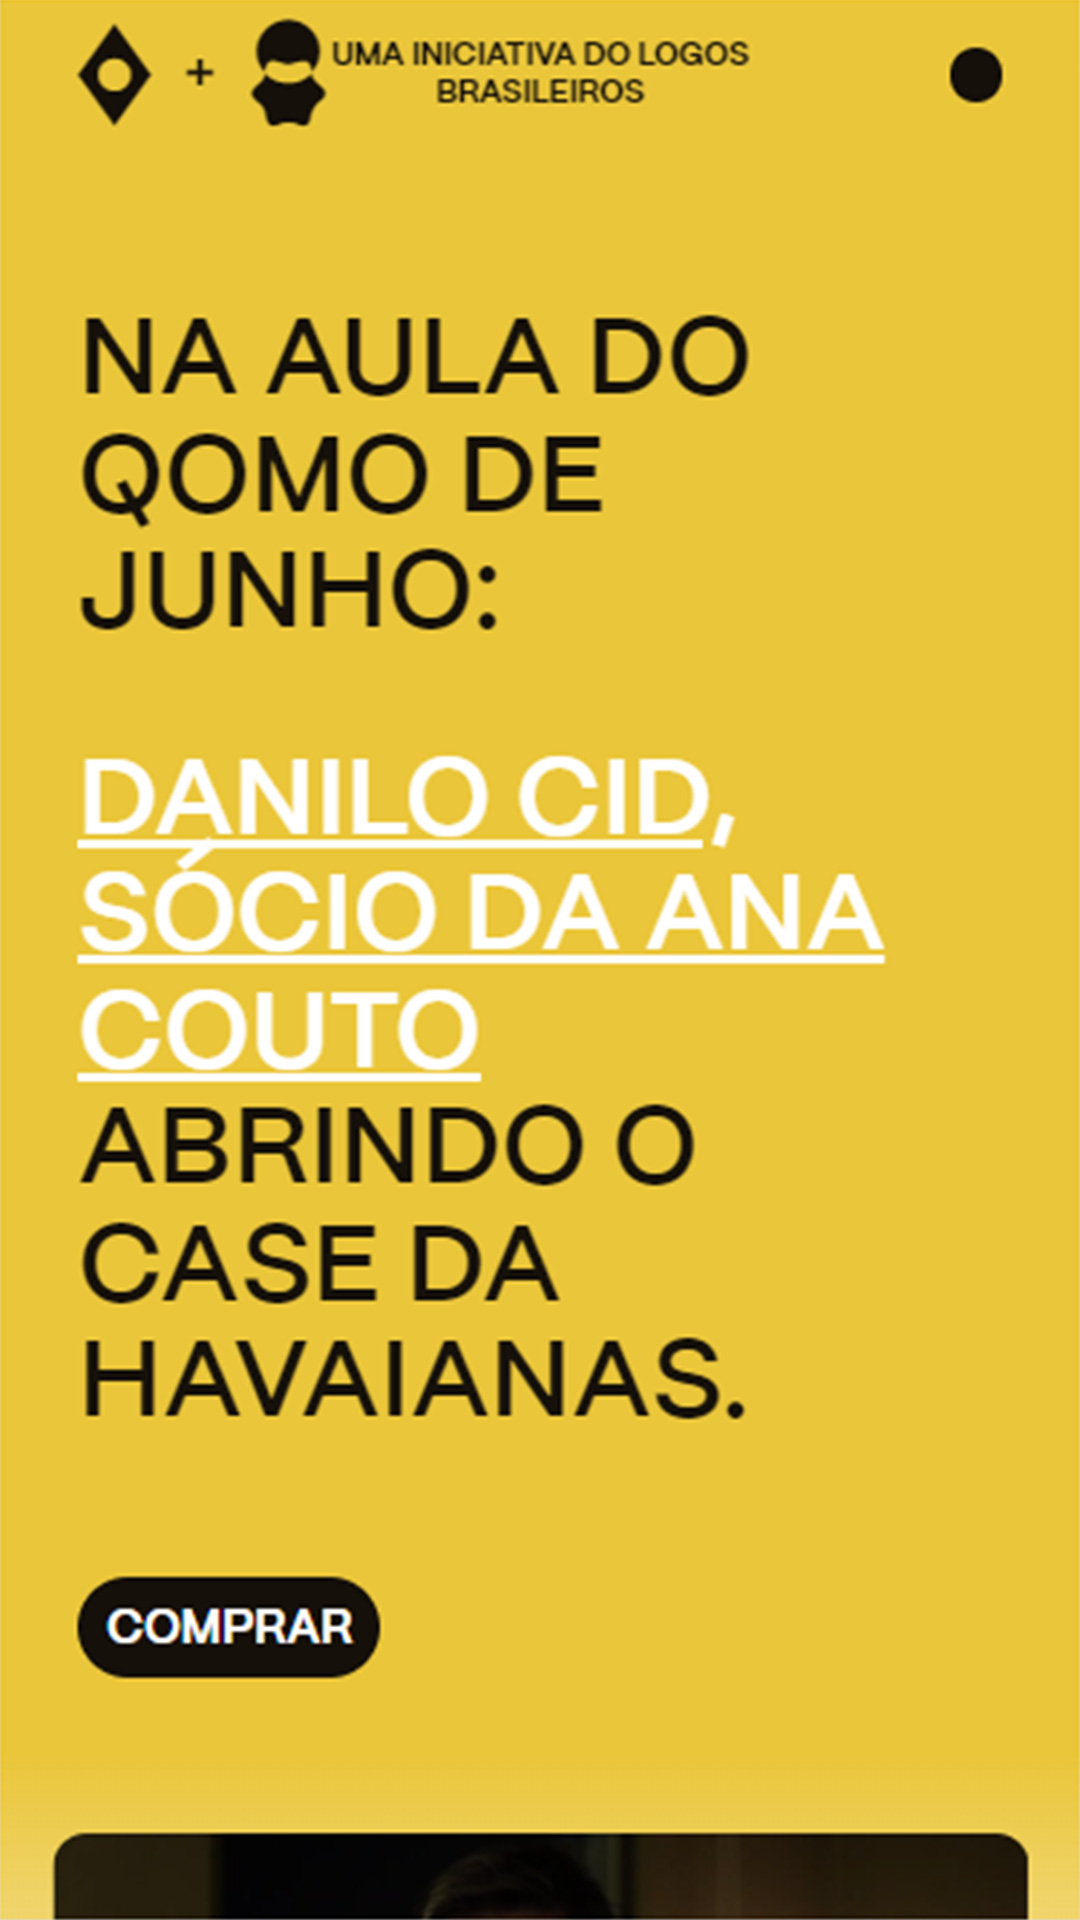 Mobile: QOMO - Logos Brasileiros